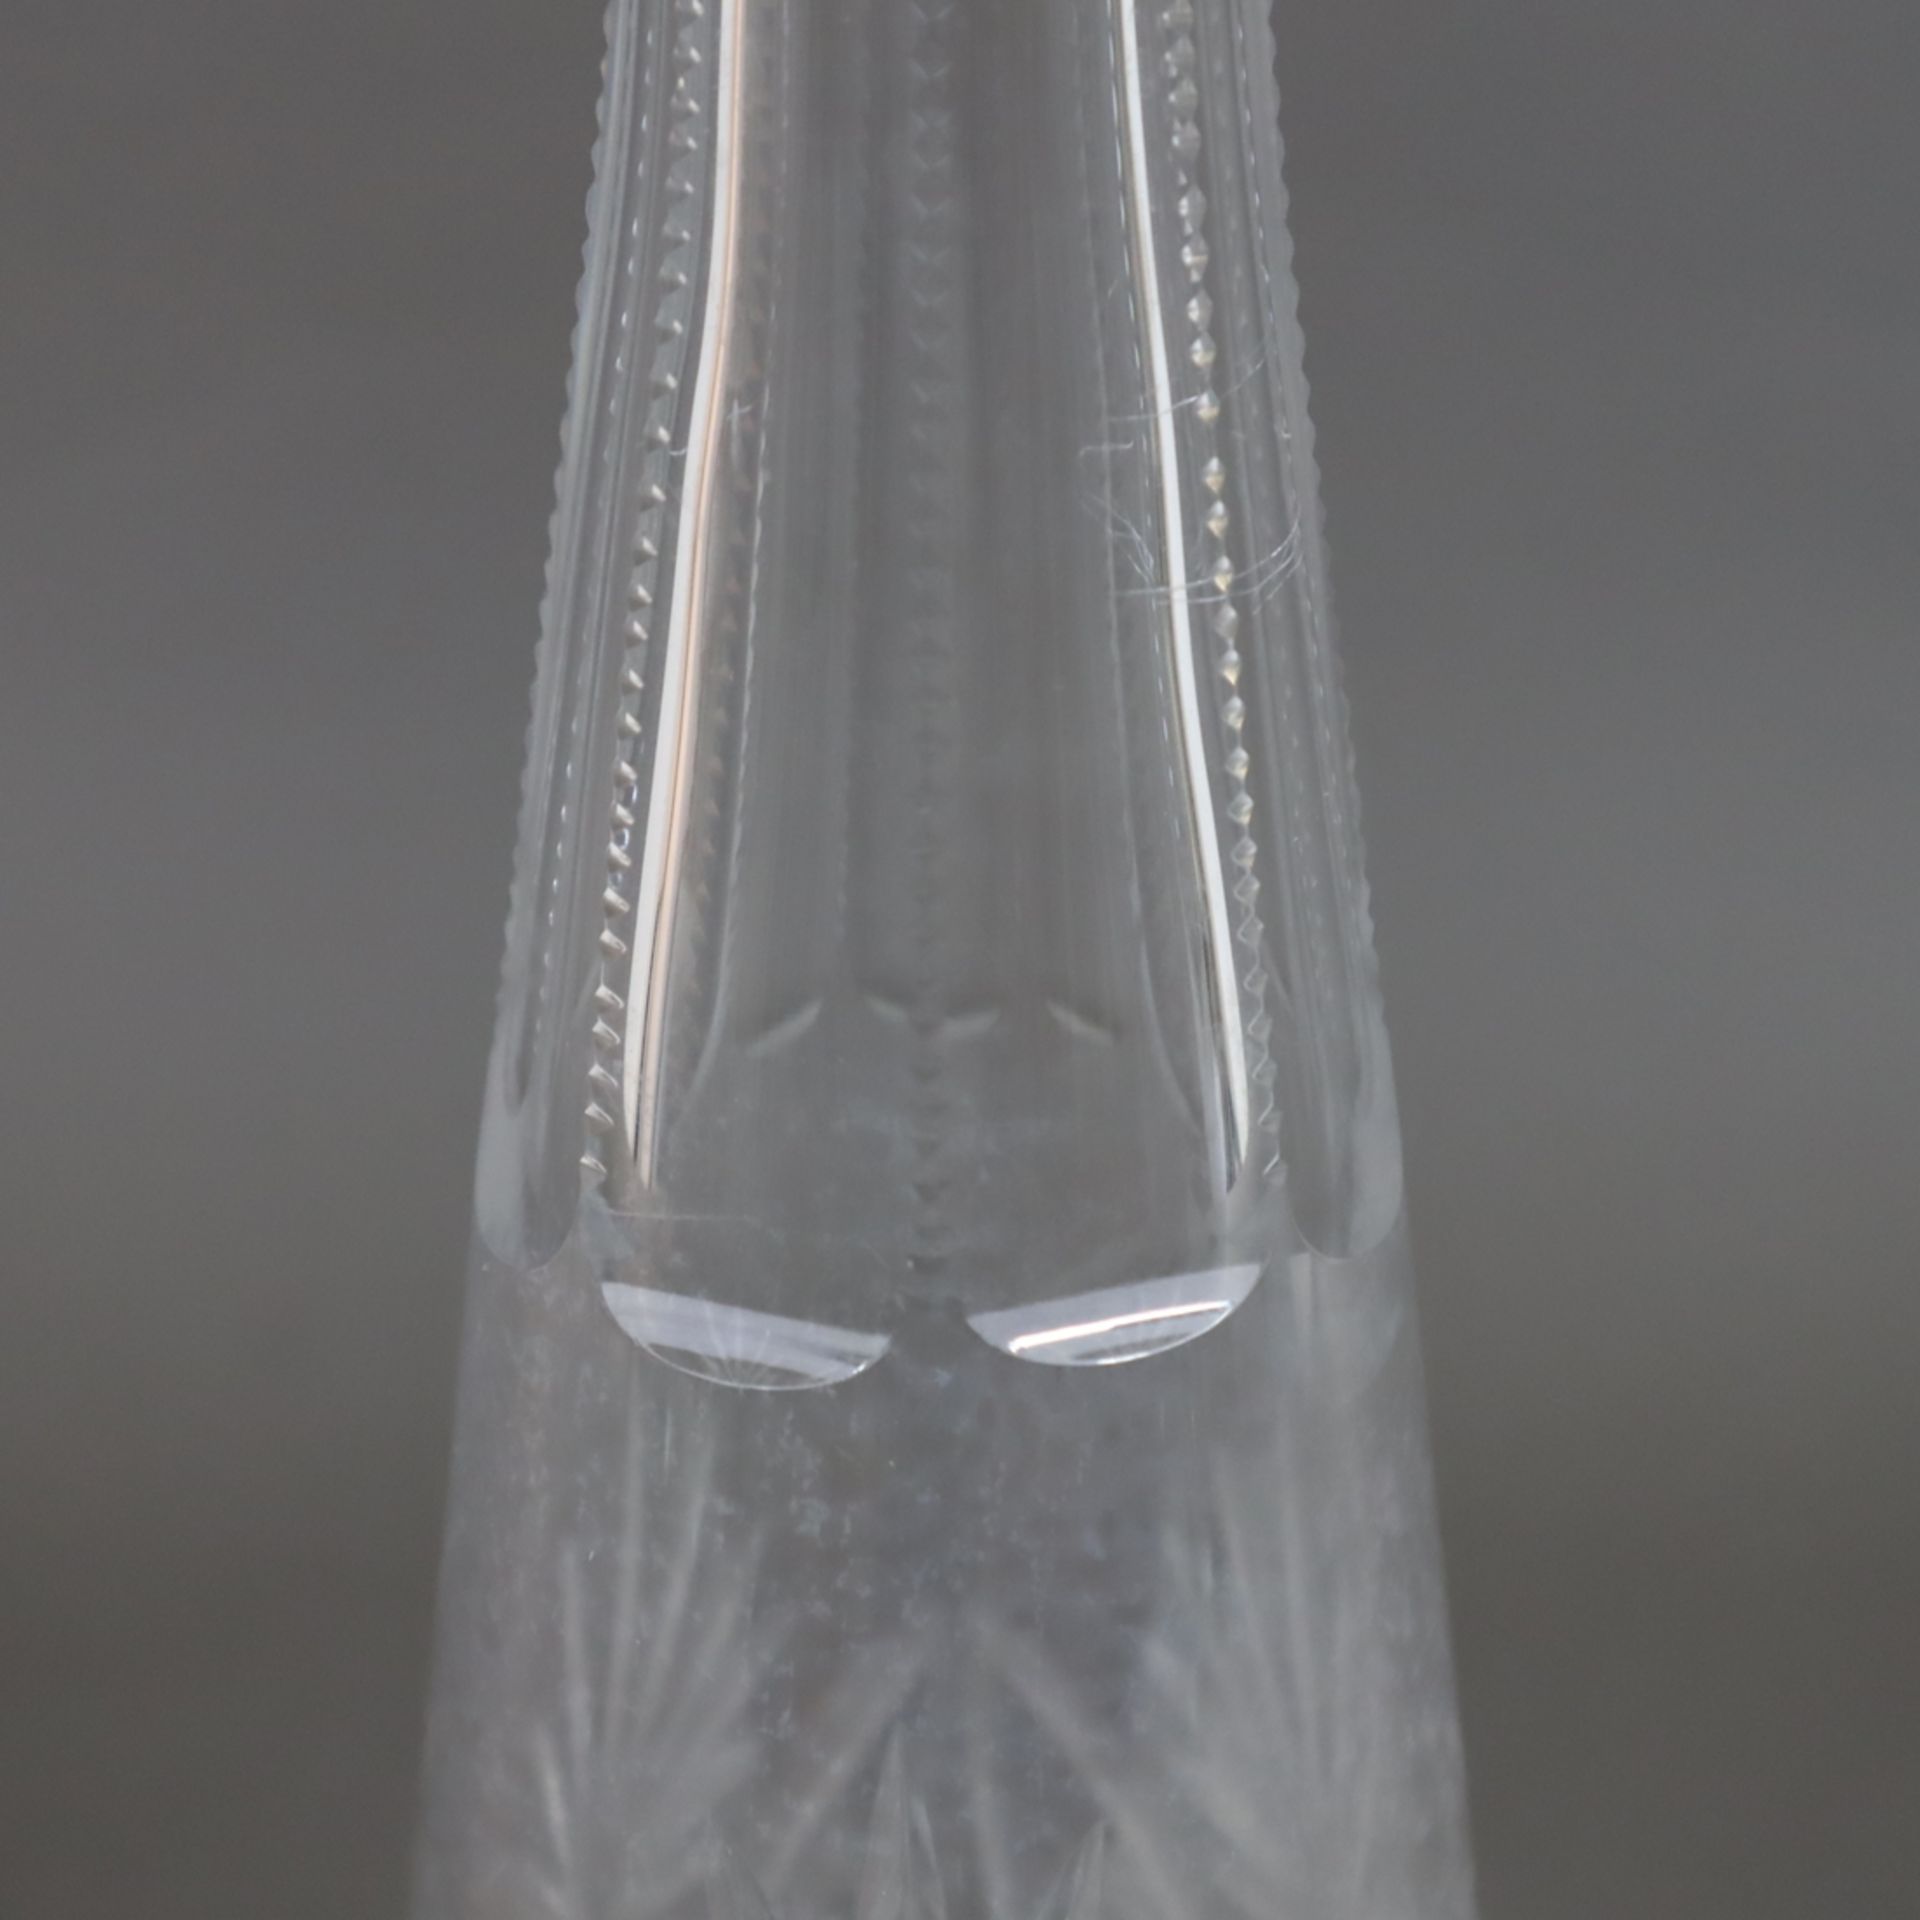 Glaskaraffe - farbloses Glas, geschliffen, Boden mit Sternschliff, mit ergänztem Zapfen-Stöpsel, Wa - Bild 4 aus 8